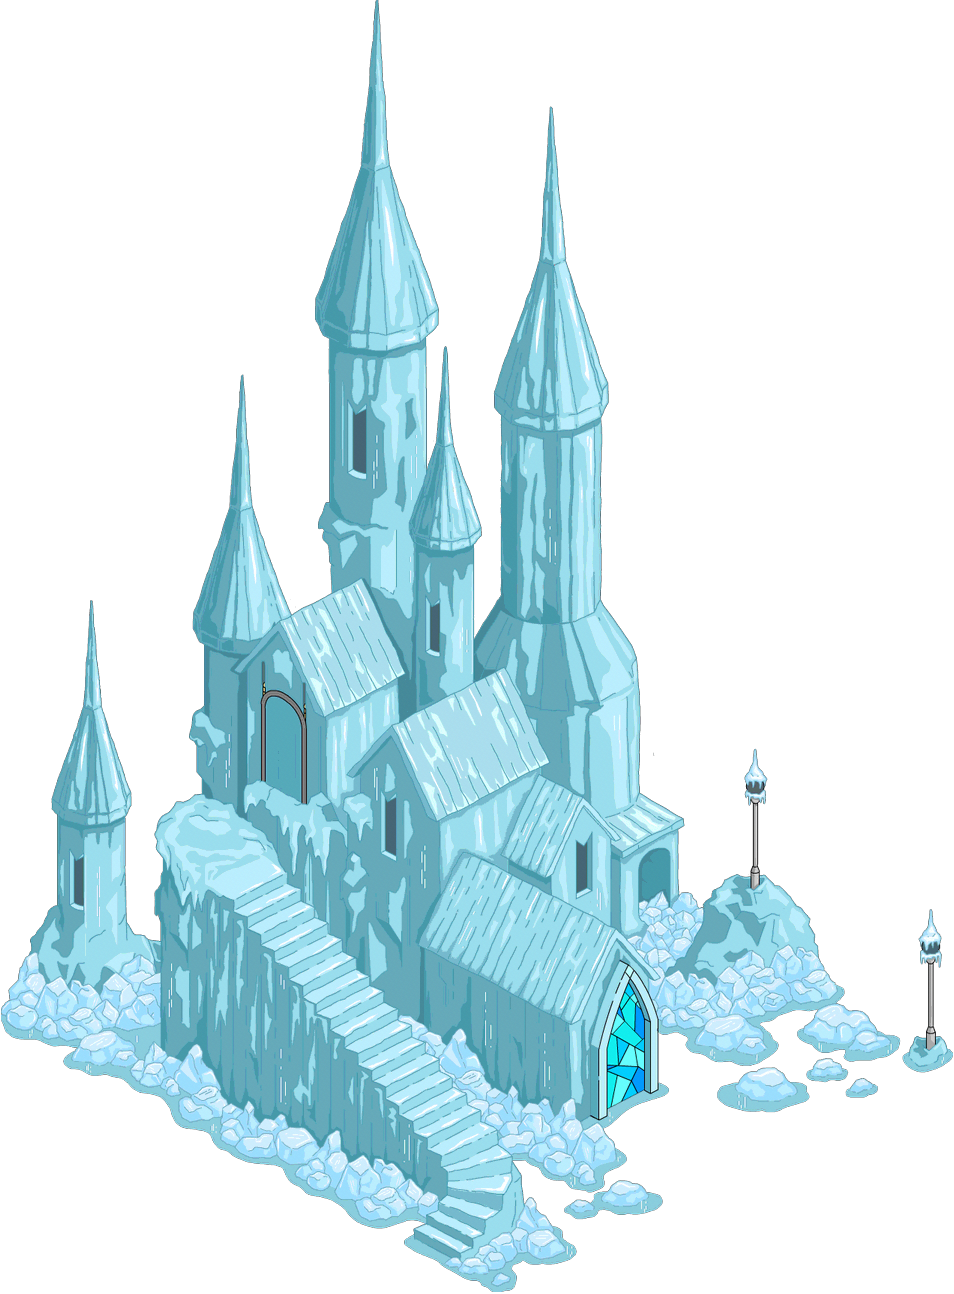 palace clipart frozen castle